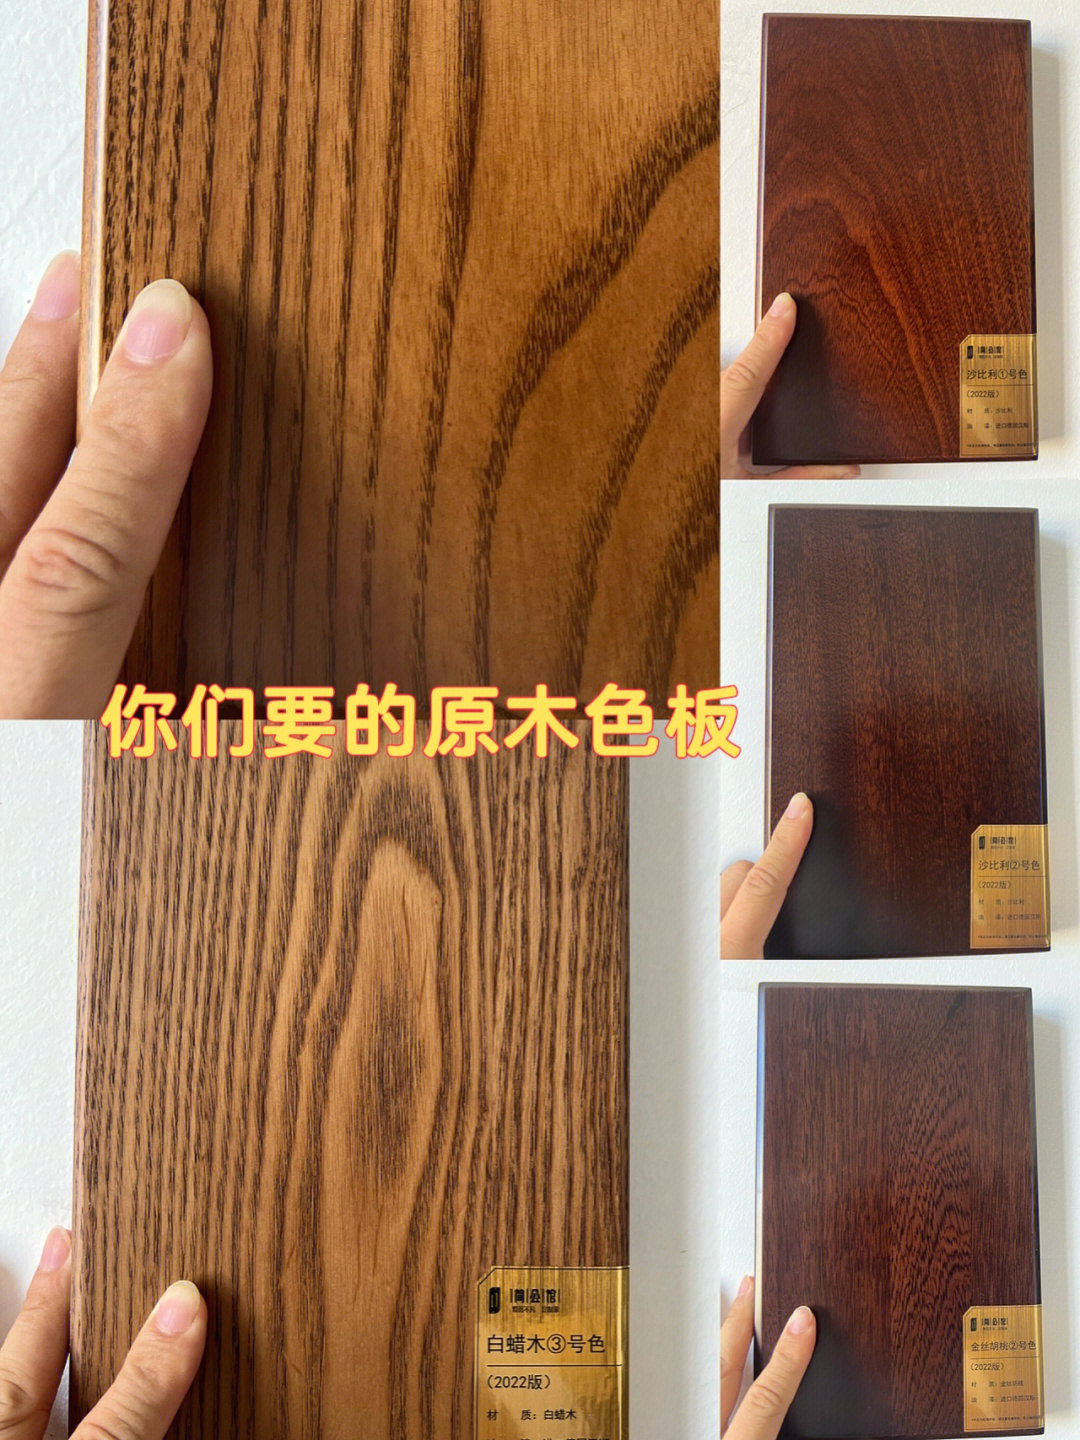 二全屋定制中常见木材可以做成多种颜色